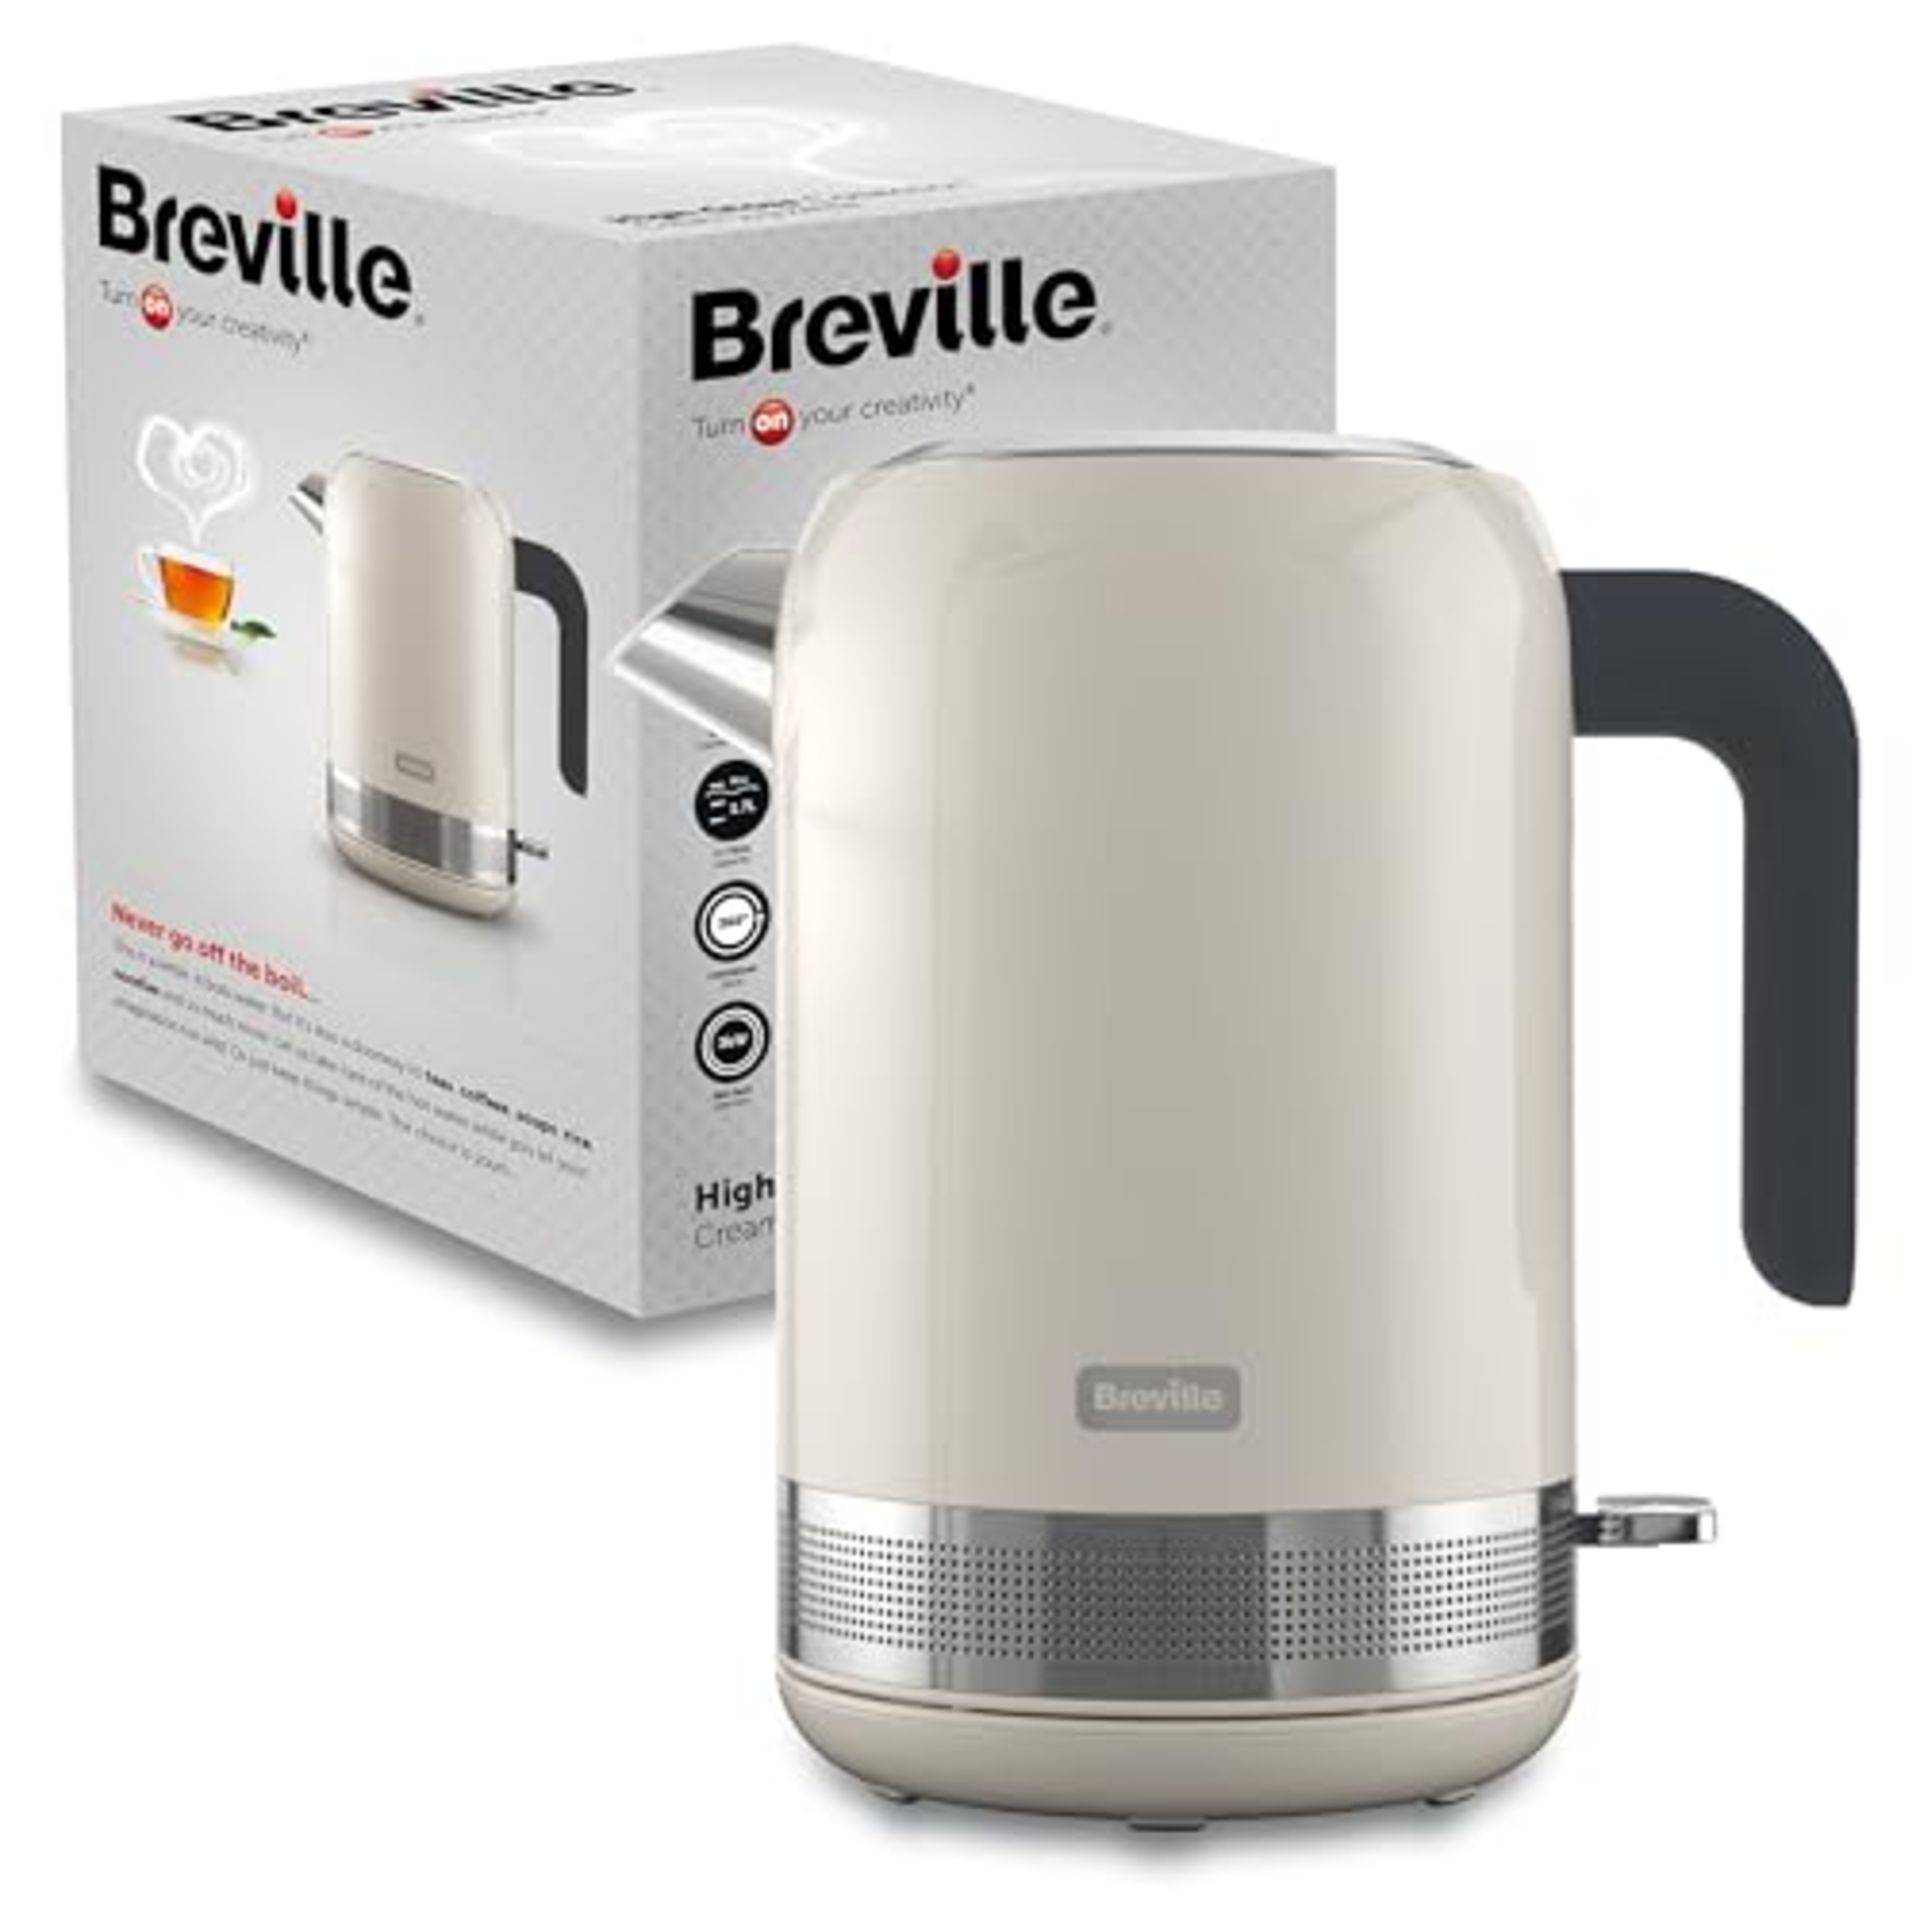 Breville High Gloss Electric Kettle | 1.7 Litre | 3kW Fast Boil | Cream, Plastic [VKT1